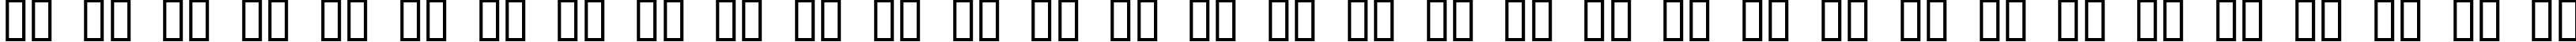 Пример написания русского алфавита шрифтом EVOL